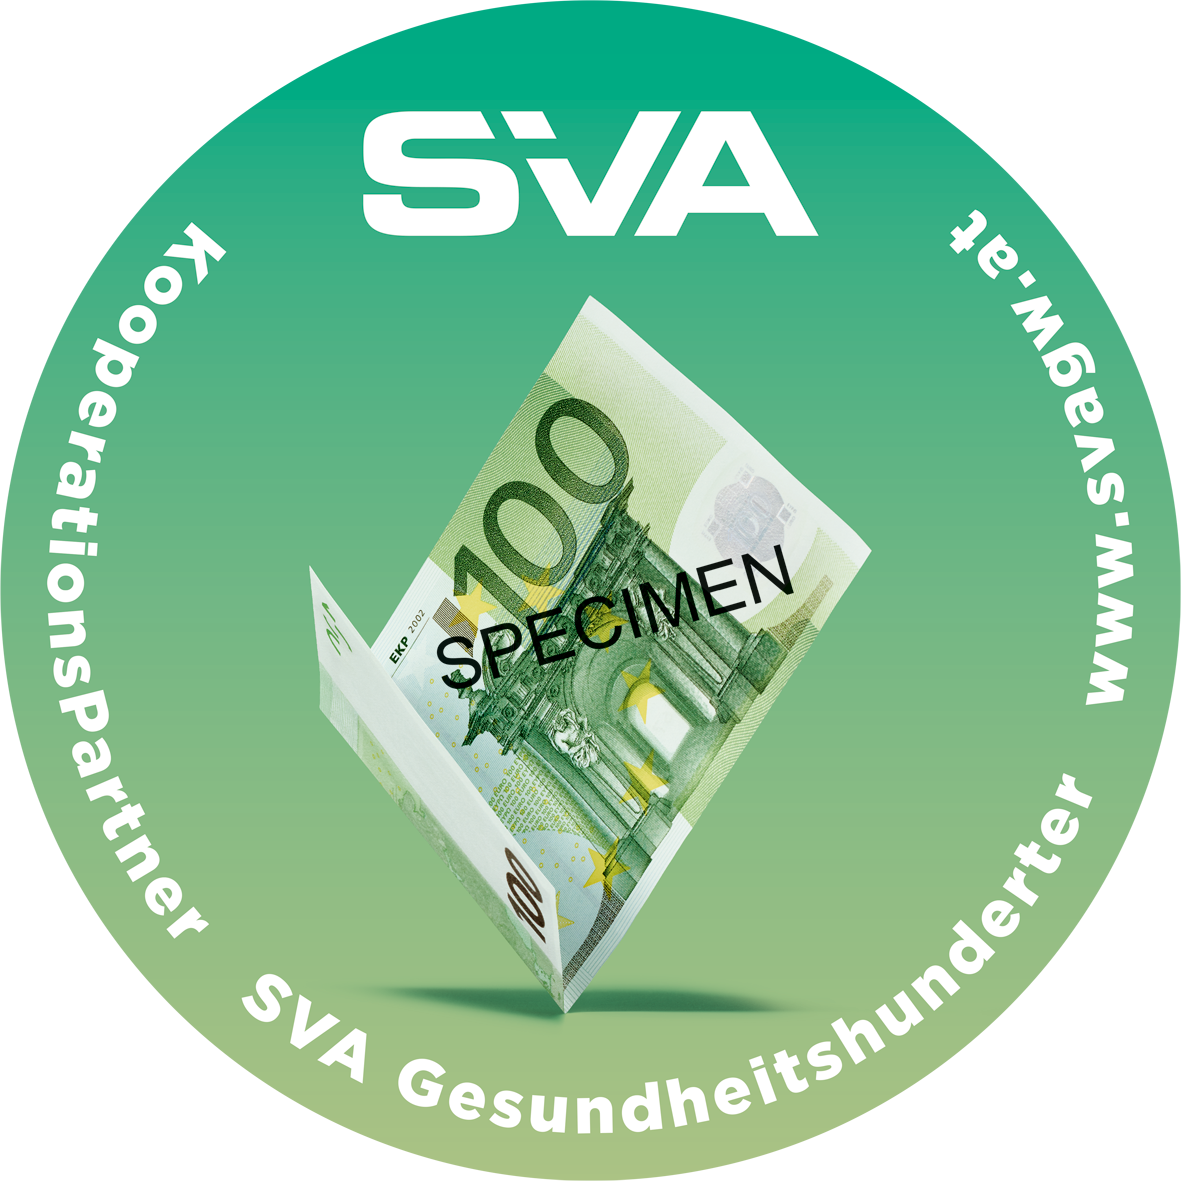 SVA_Button-Gesundheitshunderter_2_5cm-SPEZIMEN-transparent